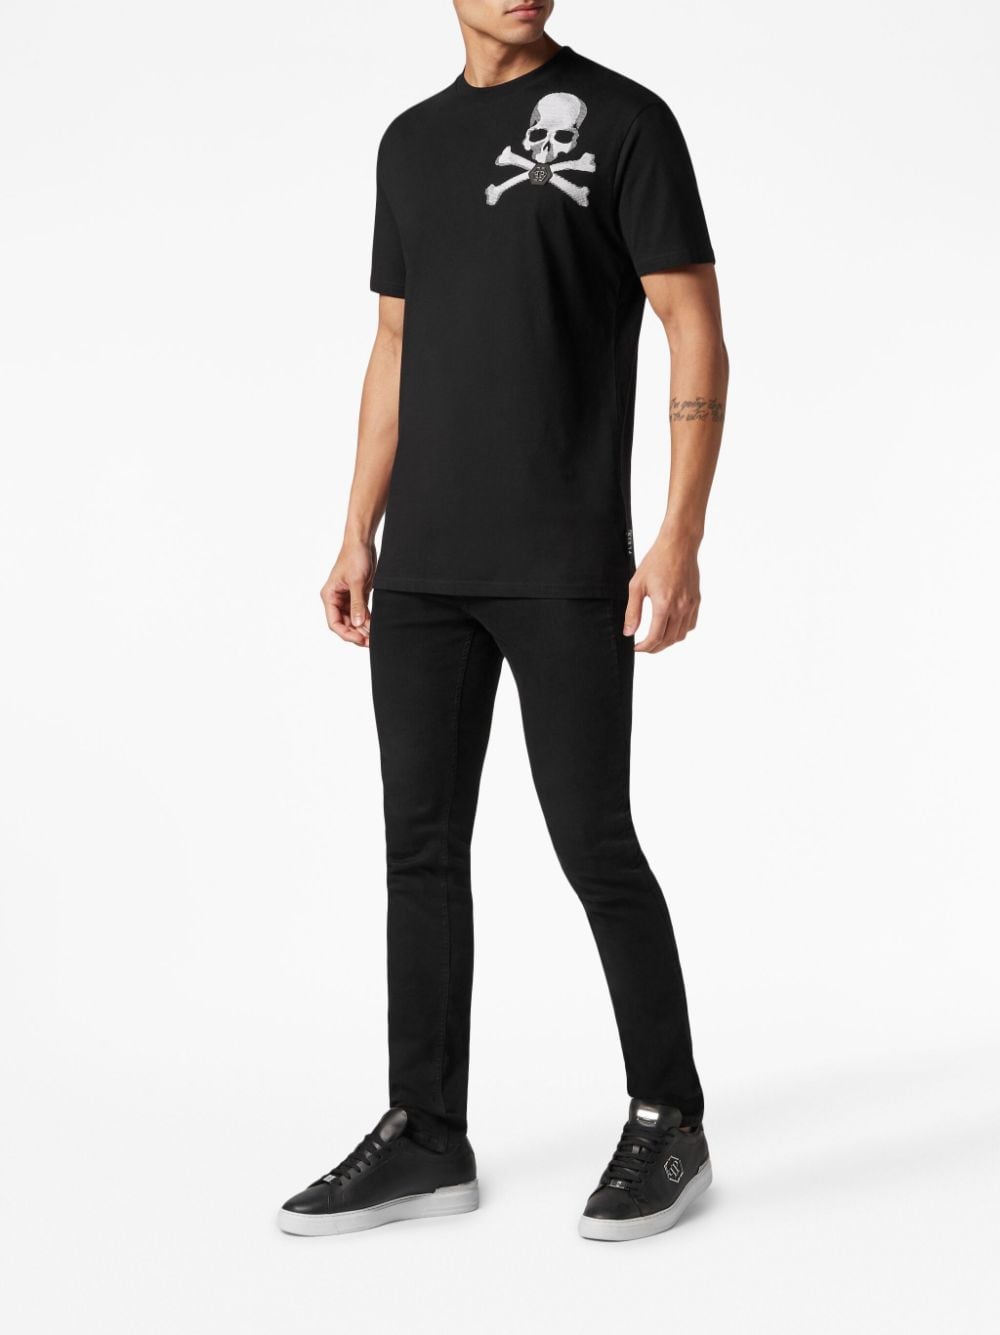 SKULL&BONES 短袖T恤